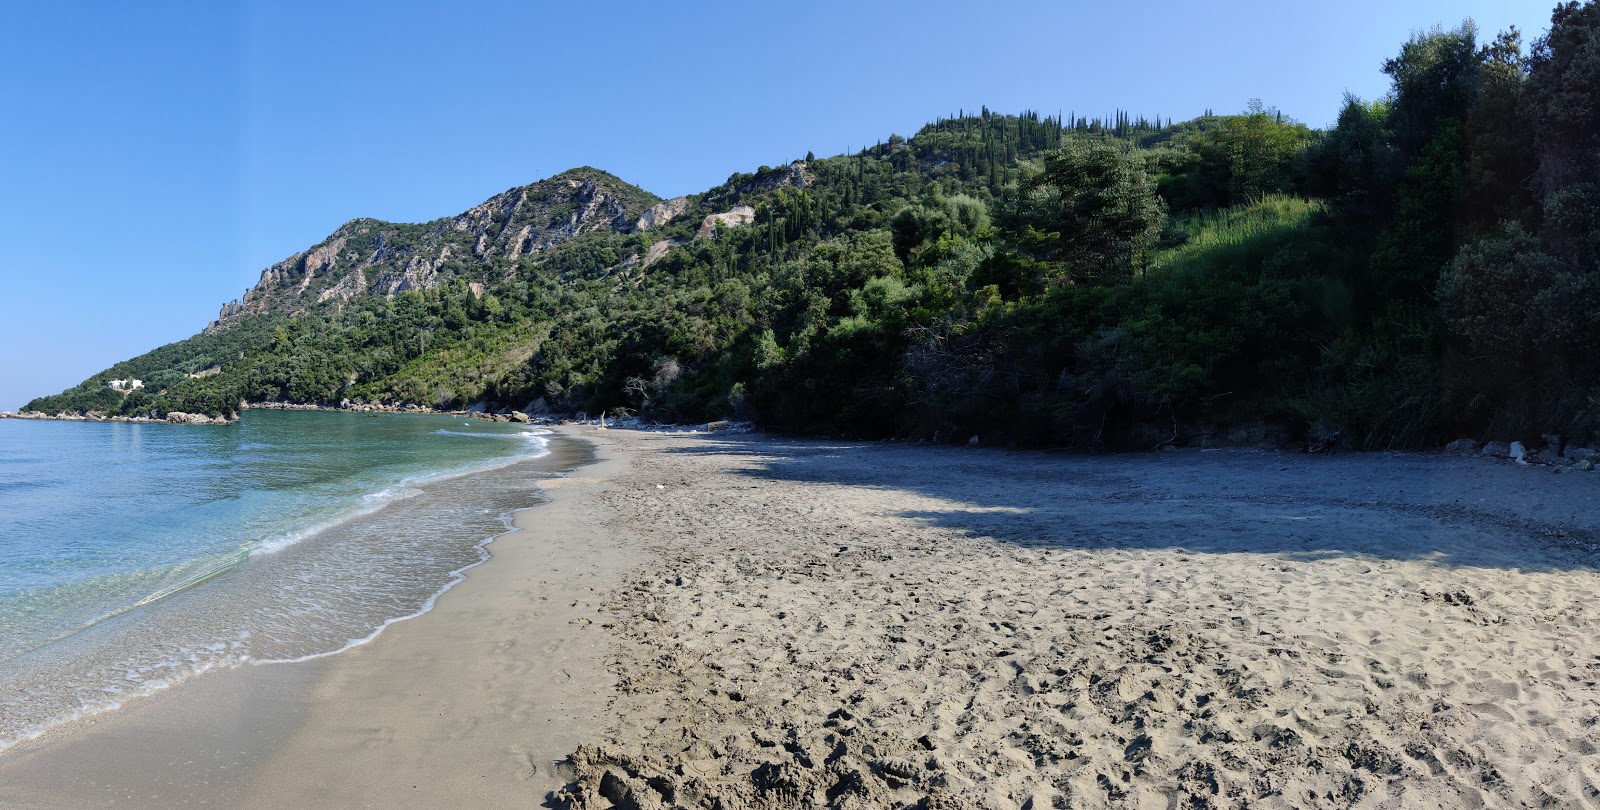 Zdjęcie Arilla beach - popularne miejsce wśród znawców relaksu